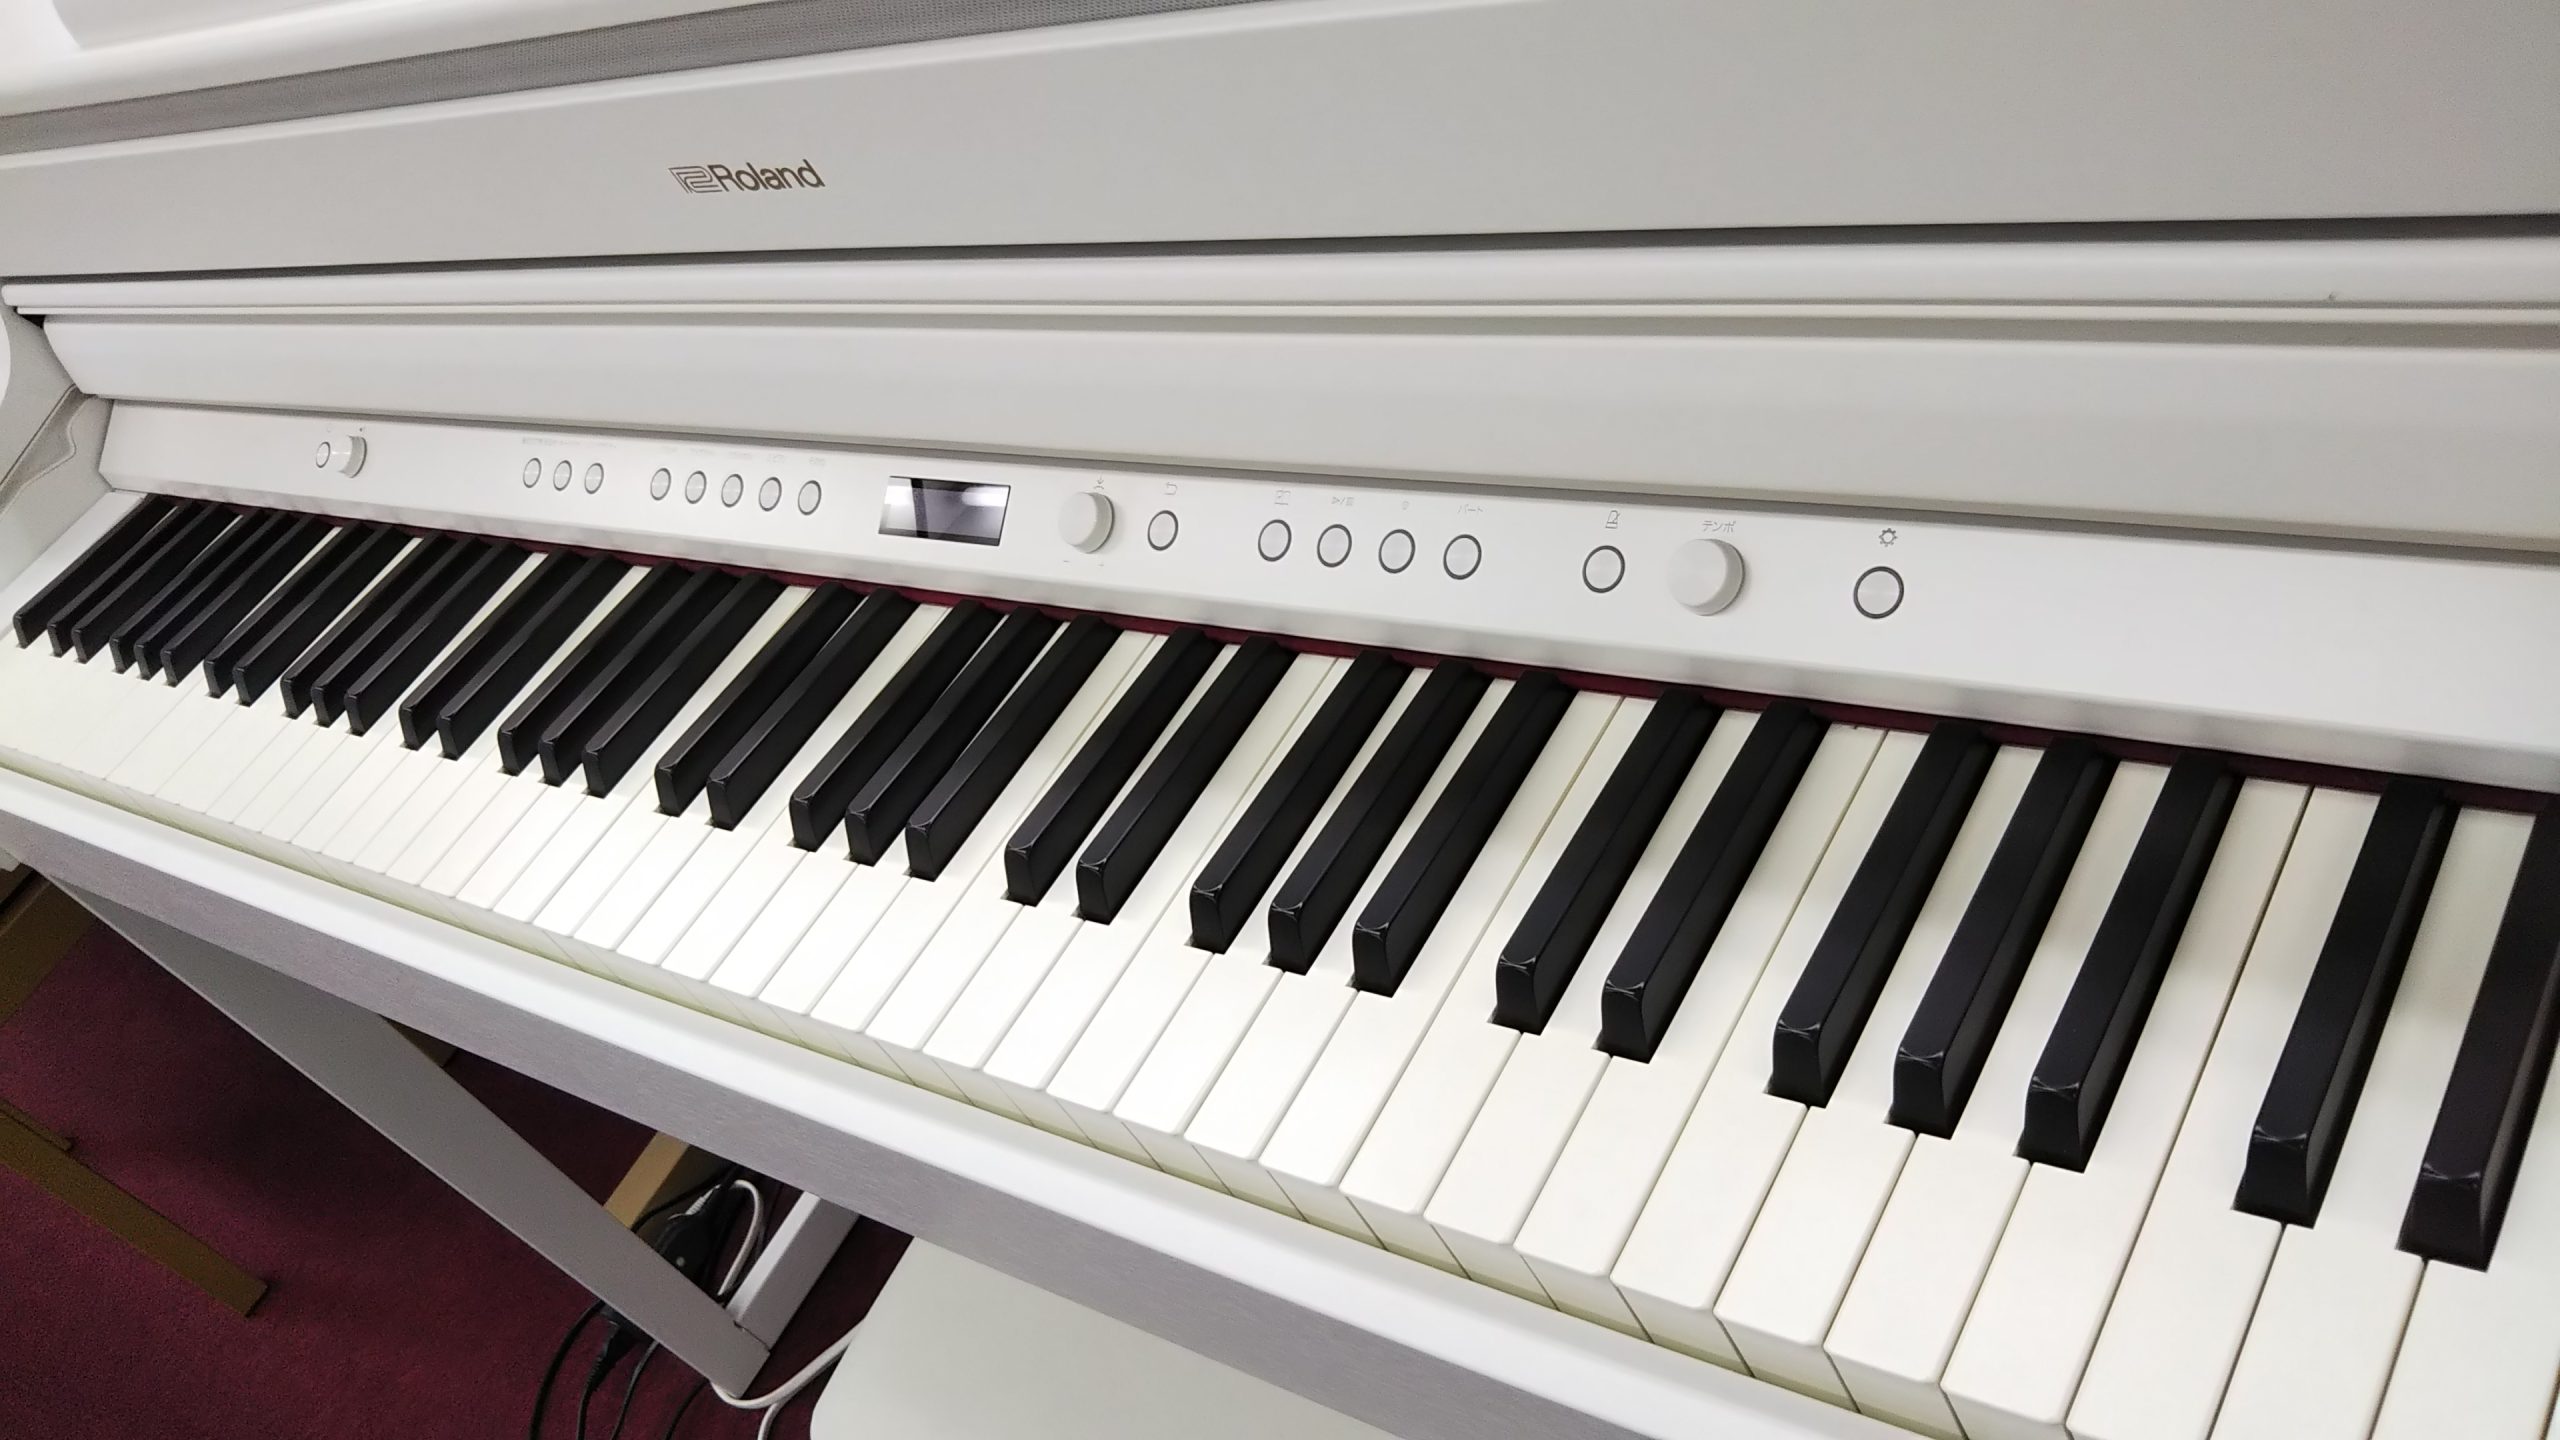 電子ピアノ ローランド HP704WHS